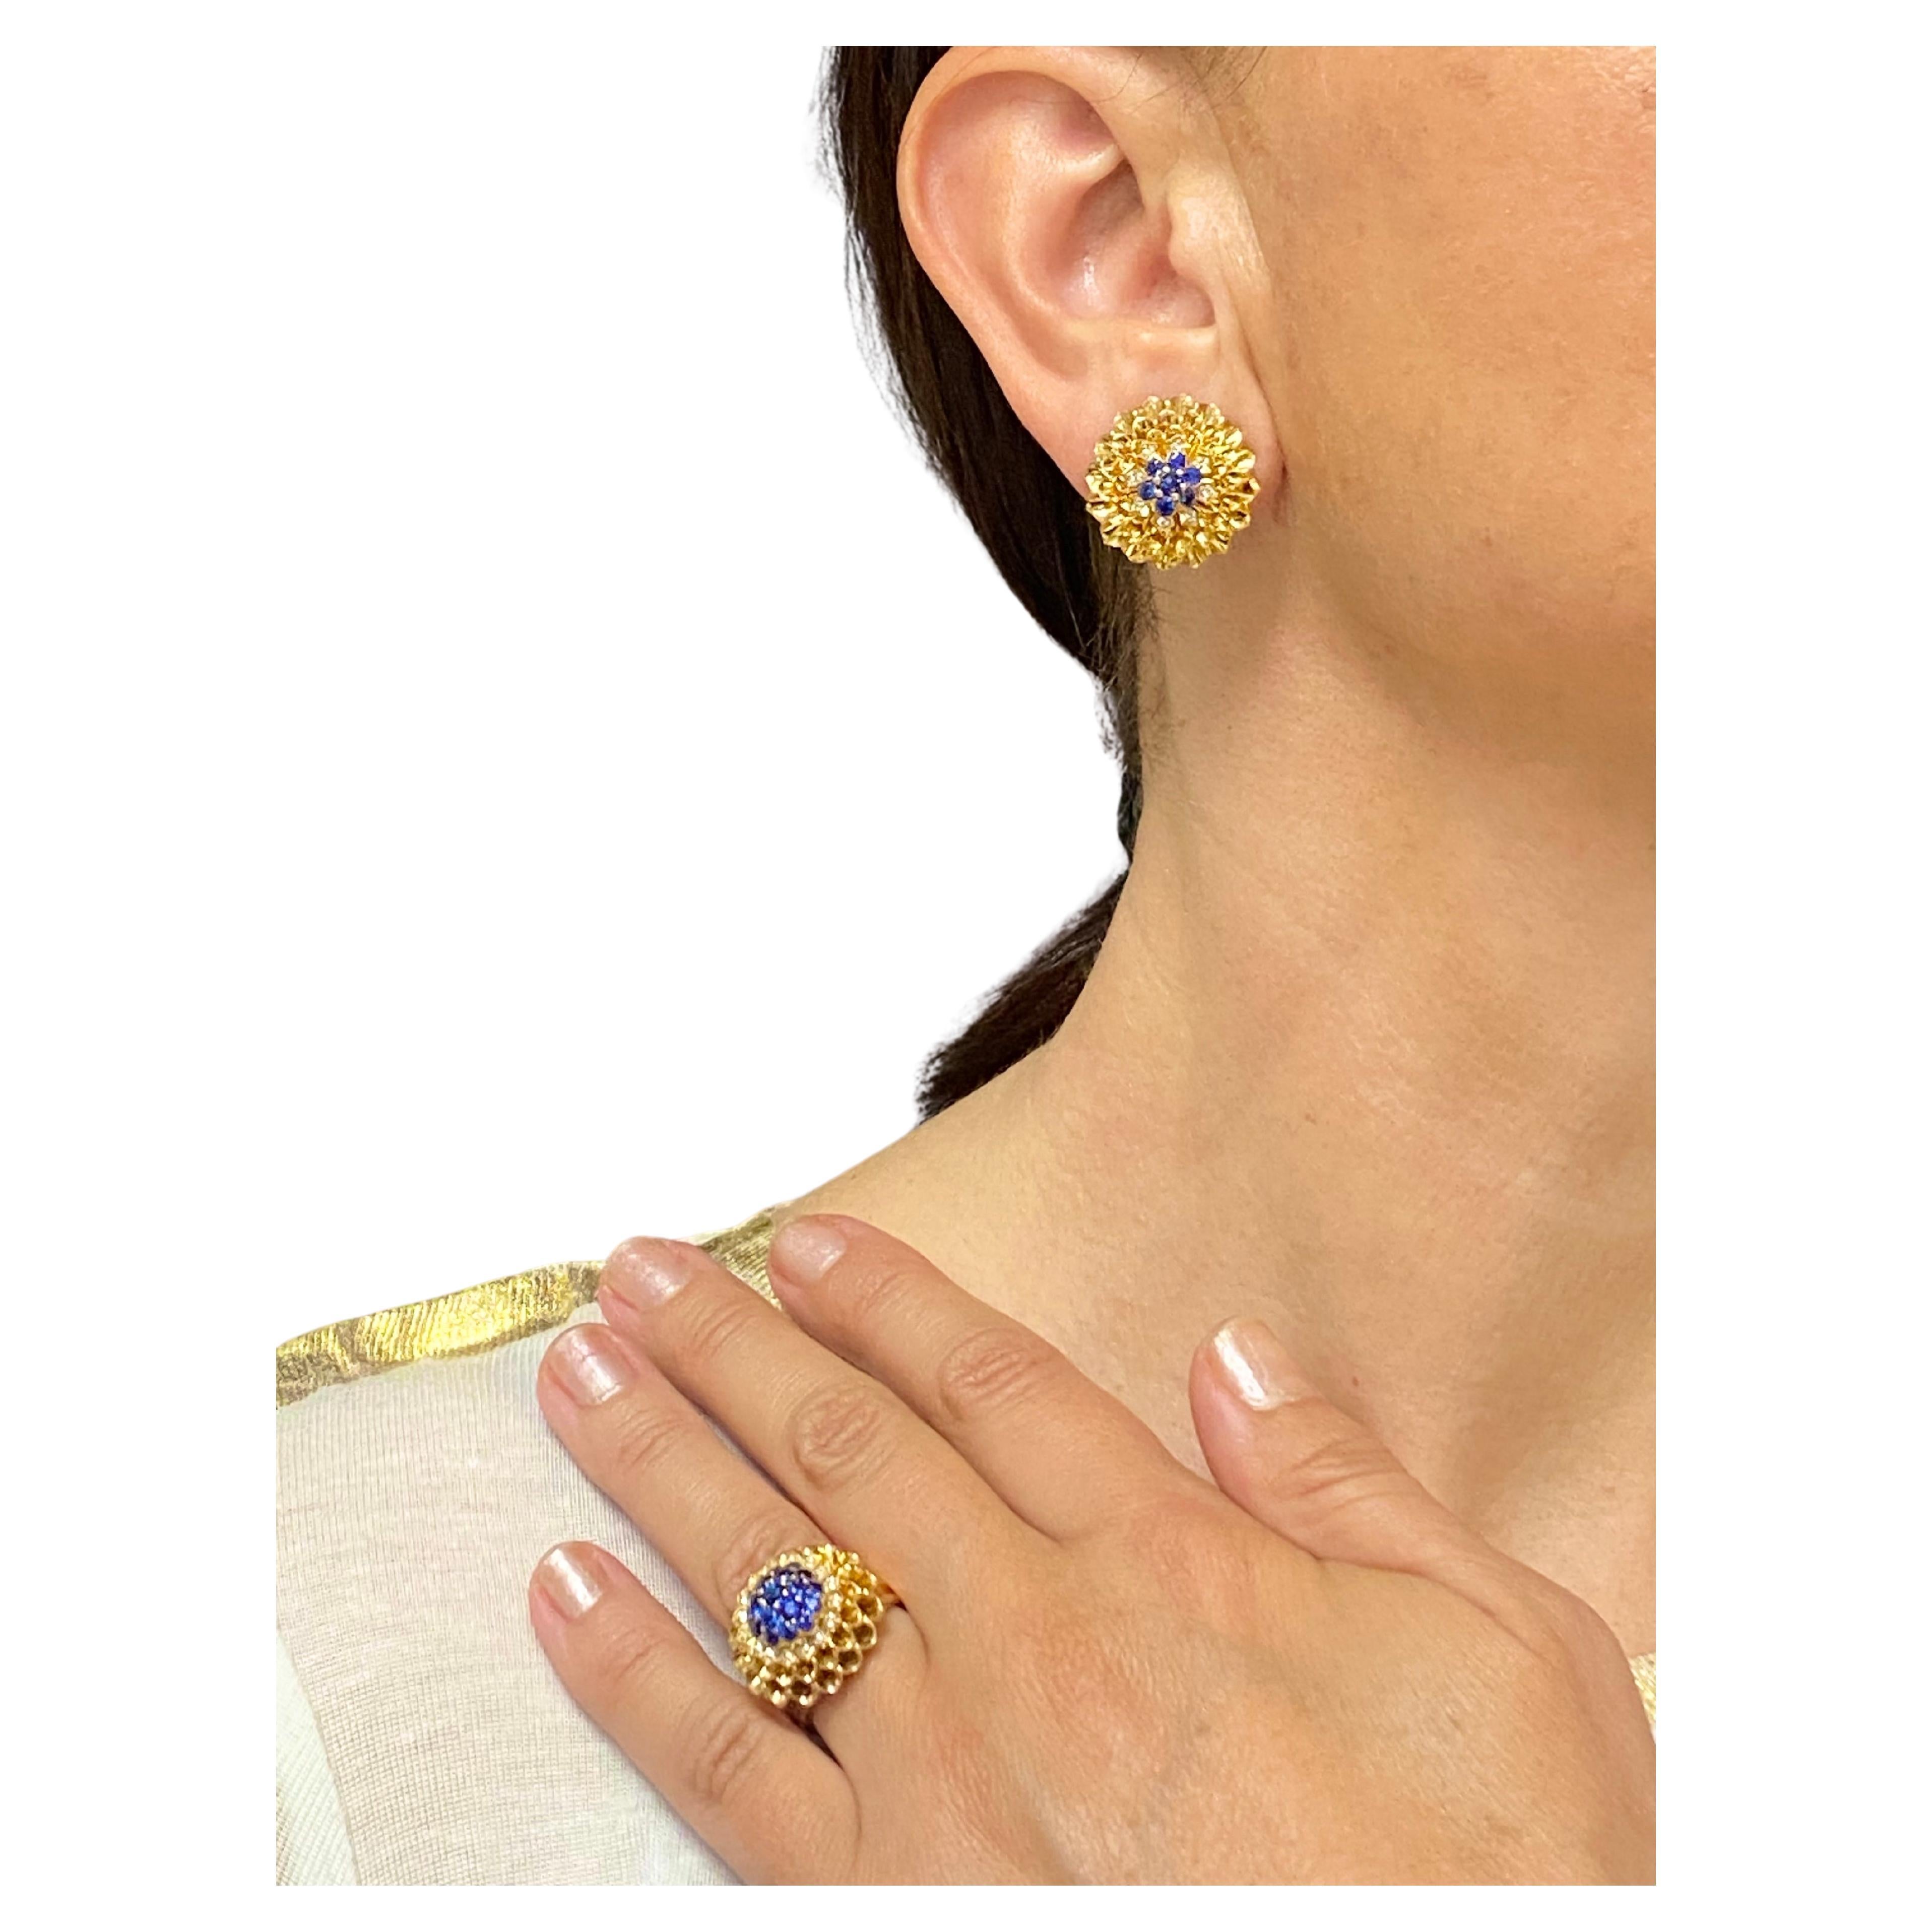 DESIGNER : Tiffany & Co.
CIRCA : années 1970
MATERIALES : Or jaune 14k
PIERRE PREMIÈRE : Diamant rond taillé en brillant
PIERRE PREMIÈRE : Saphir 
POIDS : Bague - 13,3 grammes, Boucles d'oreilles - 16,8 grammes
MESURES : Diamètre de la bague et des